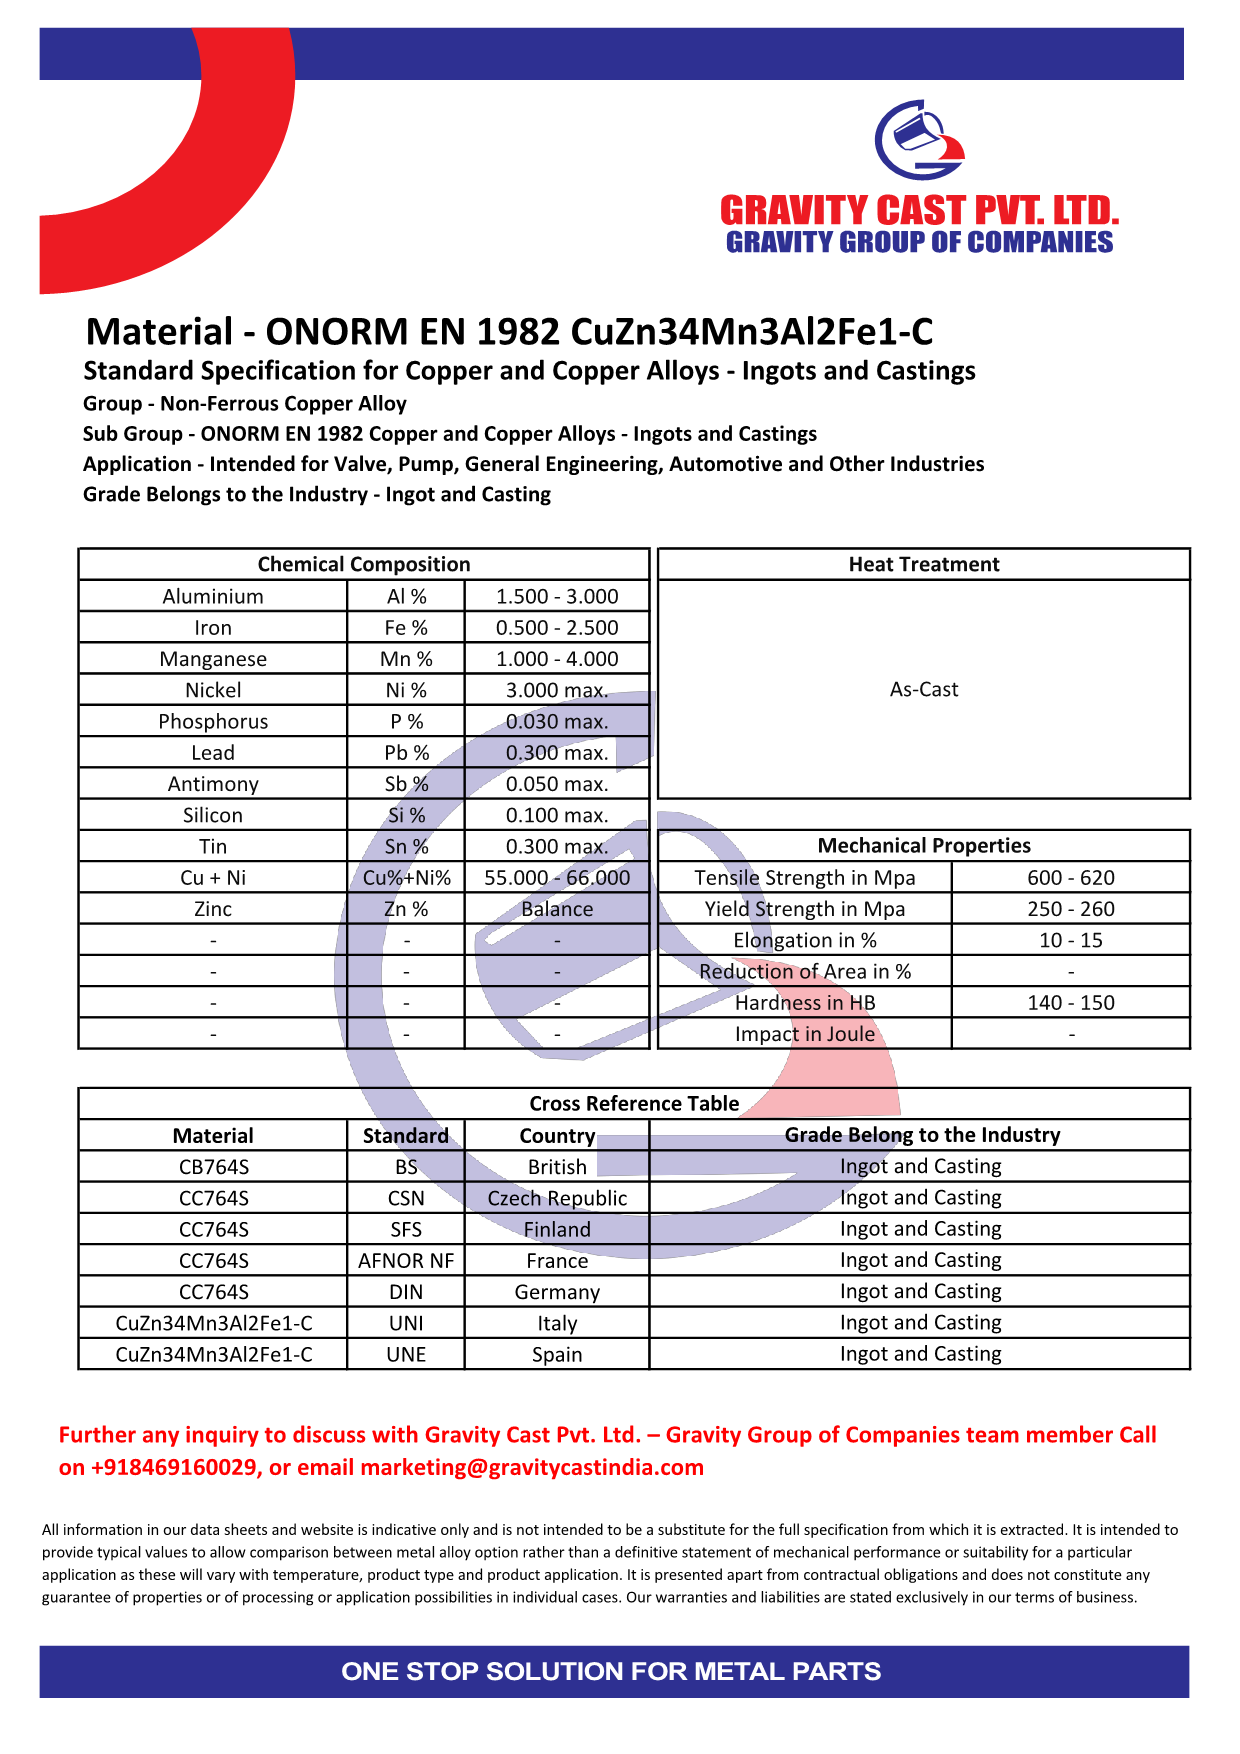 ONORM EN 1982 CuZn34Mn3Al2Fe1-C.pdf